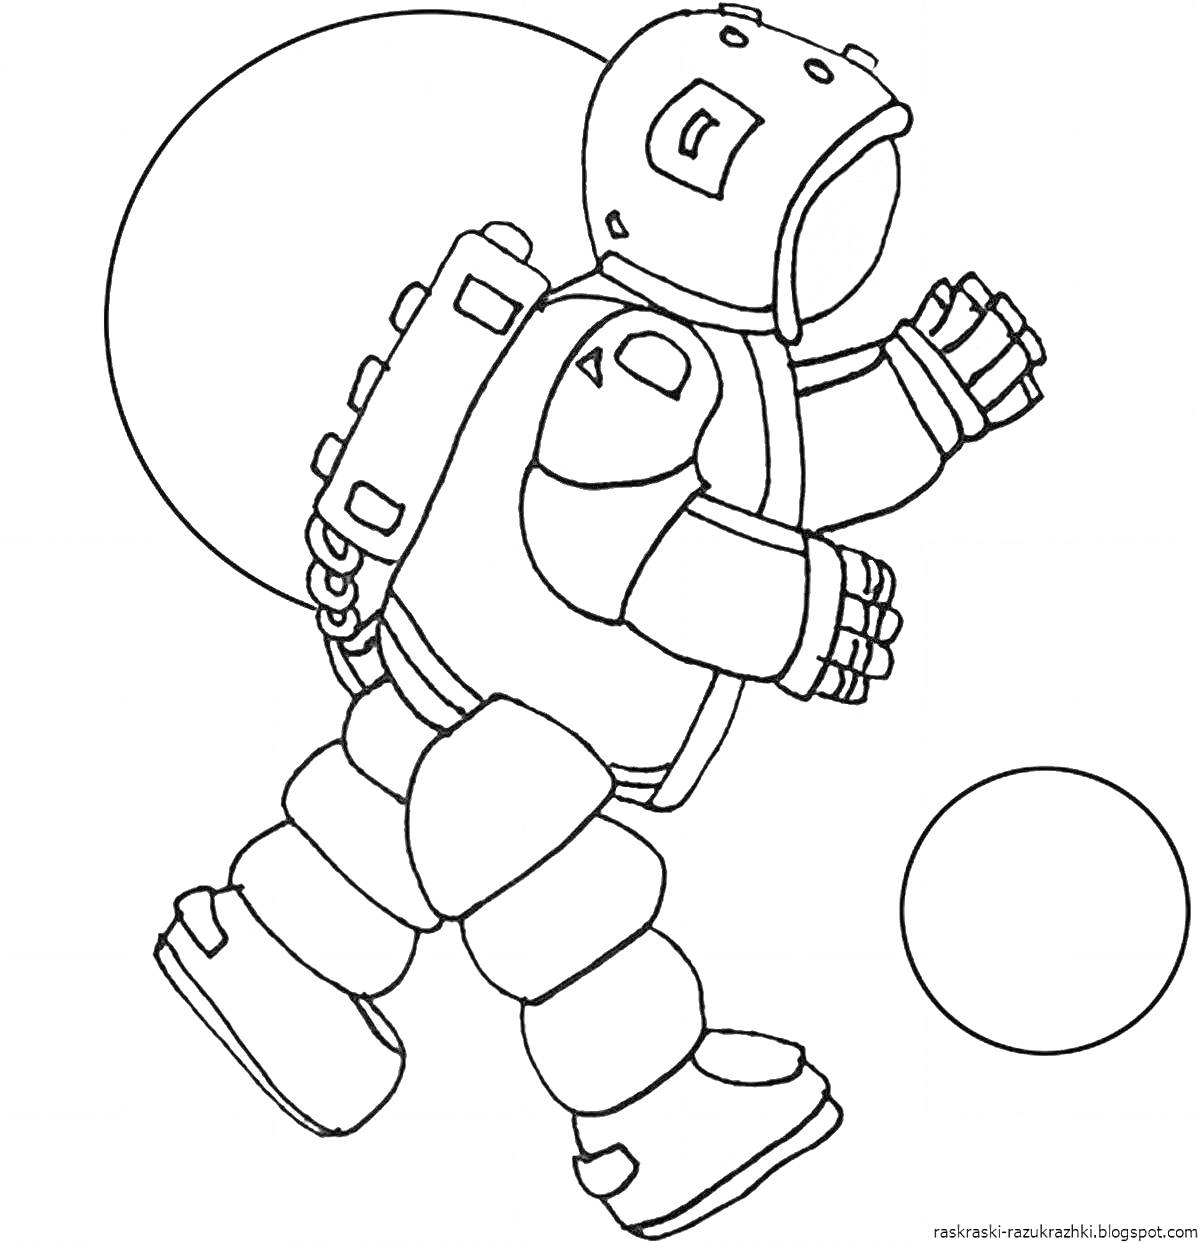 Раскраска Космонавт из Бравл Старс с мячом, скафандр с ракетным ранцем